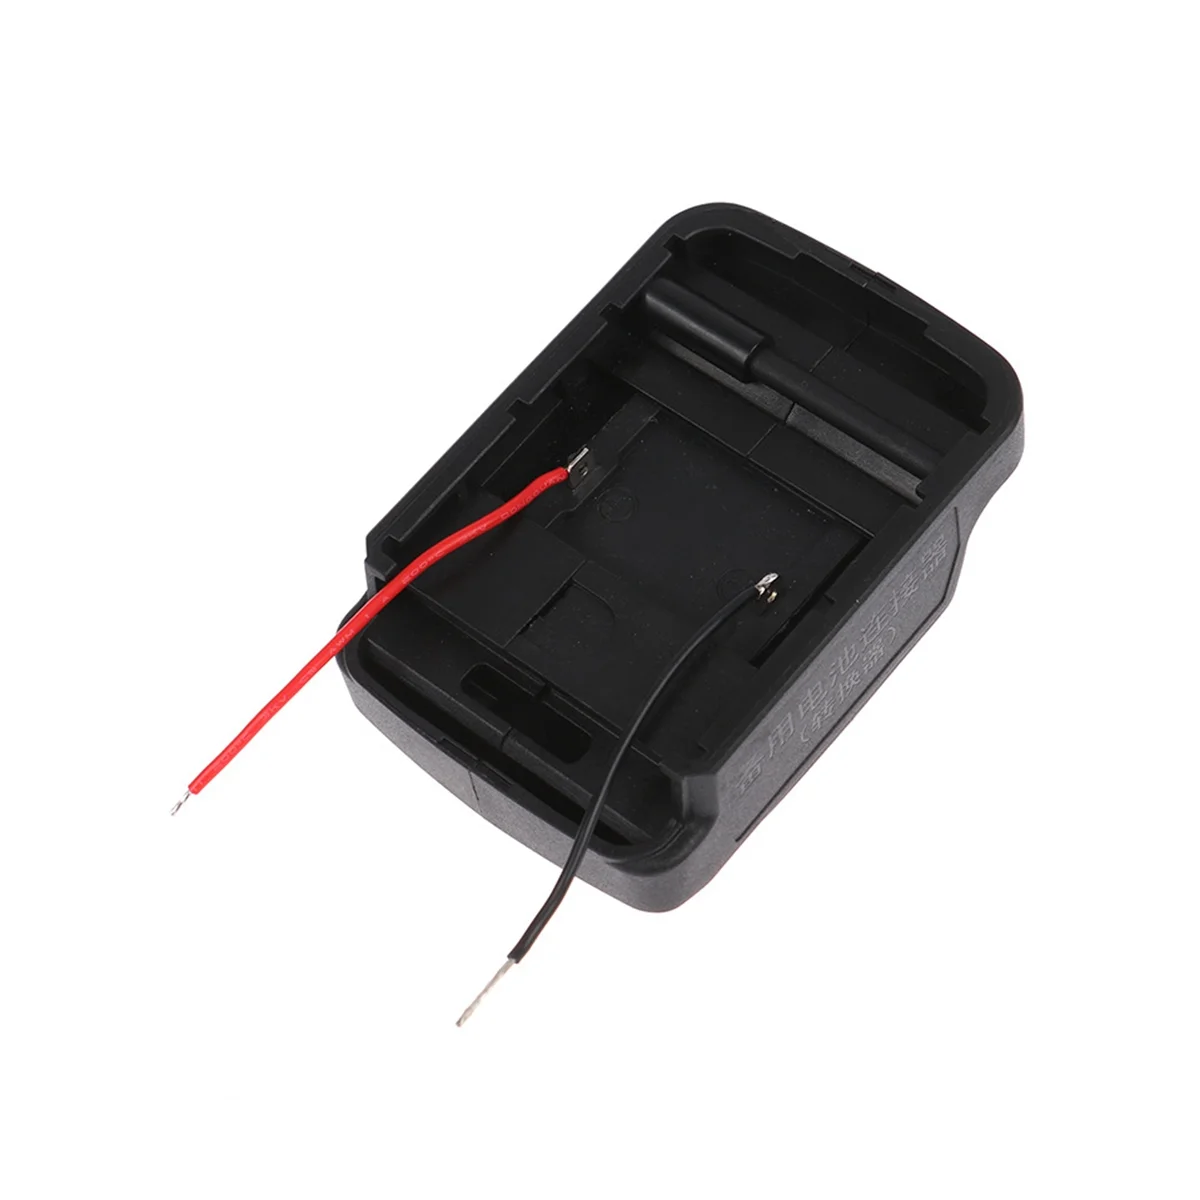 

1 шт. адаптер для аккумулятора «сделай сам», соединитель кабеля аккумулятора для литий-ионных аккумуляторов MT 18 в BL1830 BL1840 BL1850 для электрических дрелей, игрушек